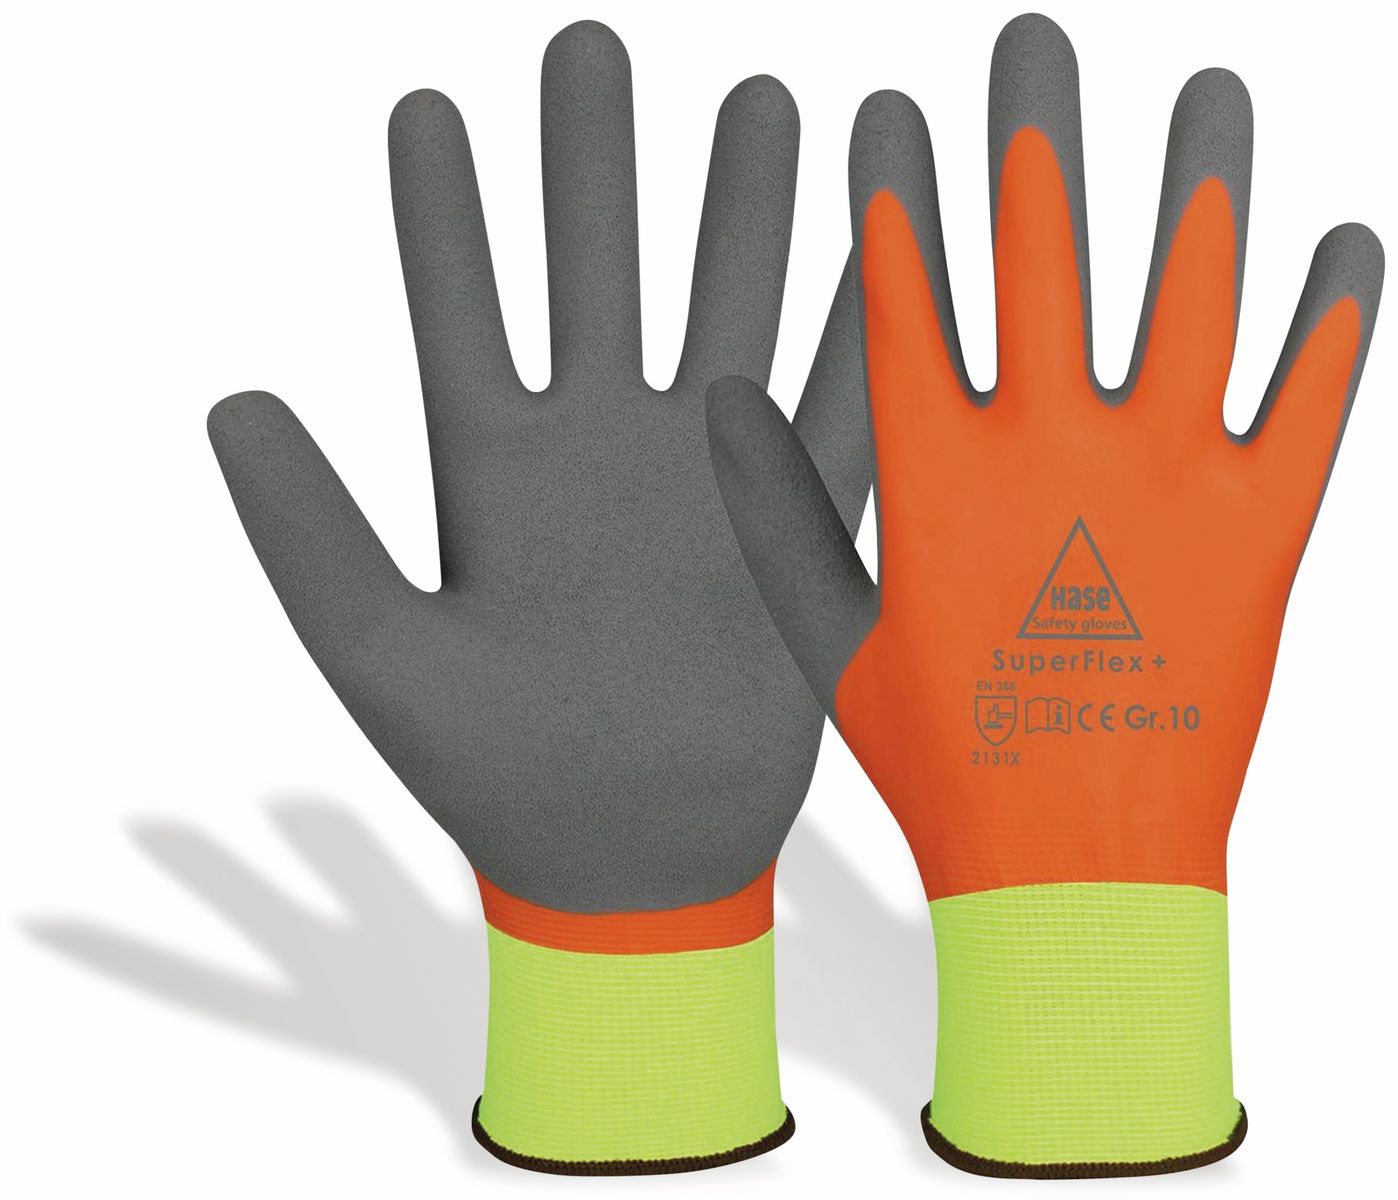 HASE SAFETY GLOVES Latex-Arbeitshandschuhe SuperFlex+, EN388, EN 420, neongelb/orange, Größe 11 von Hase Safety gloves